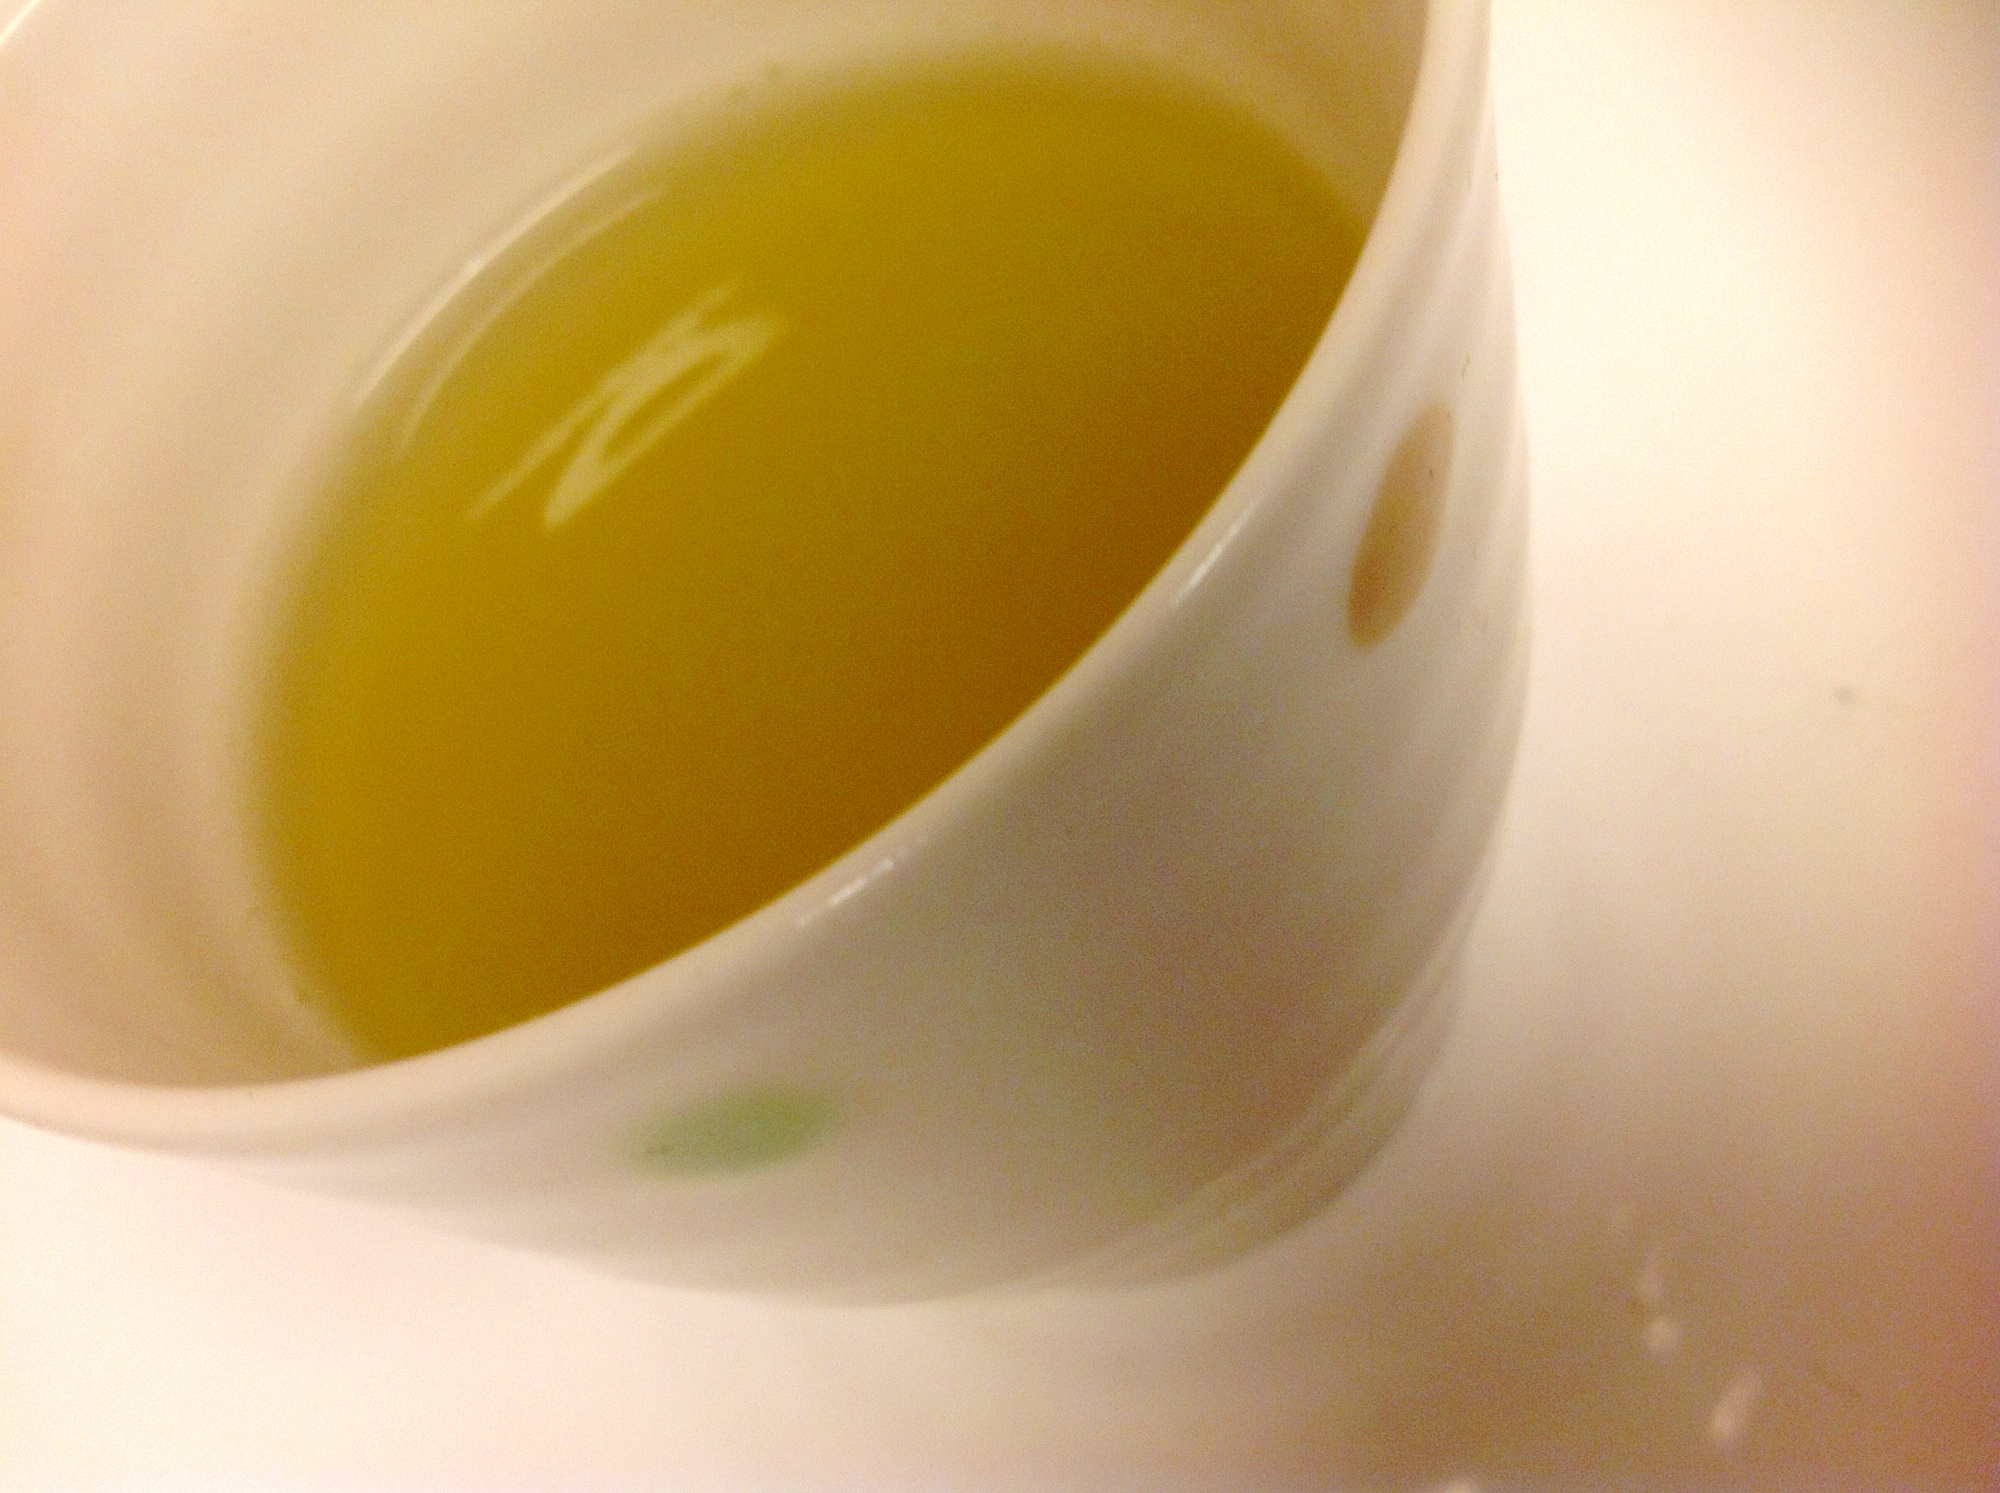 ホッと癒される〜 ホットはちみつレモン緑茶